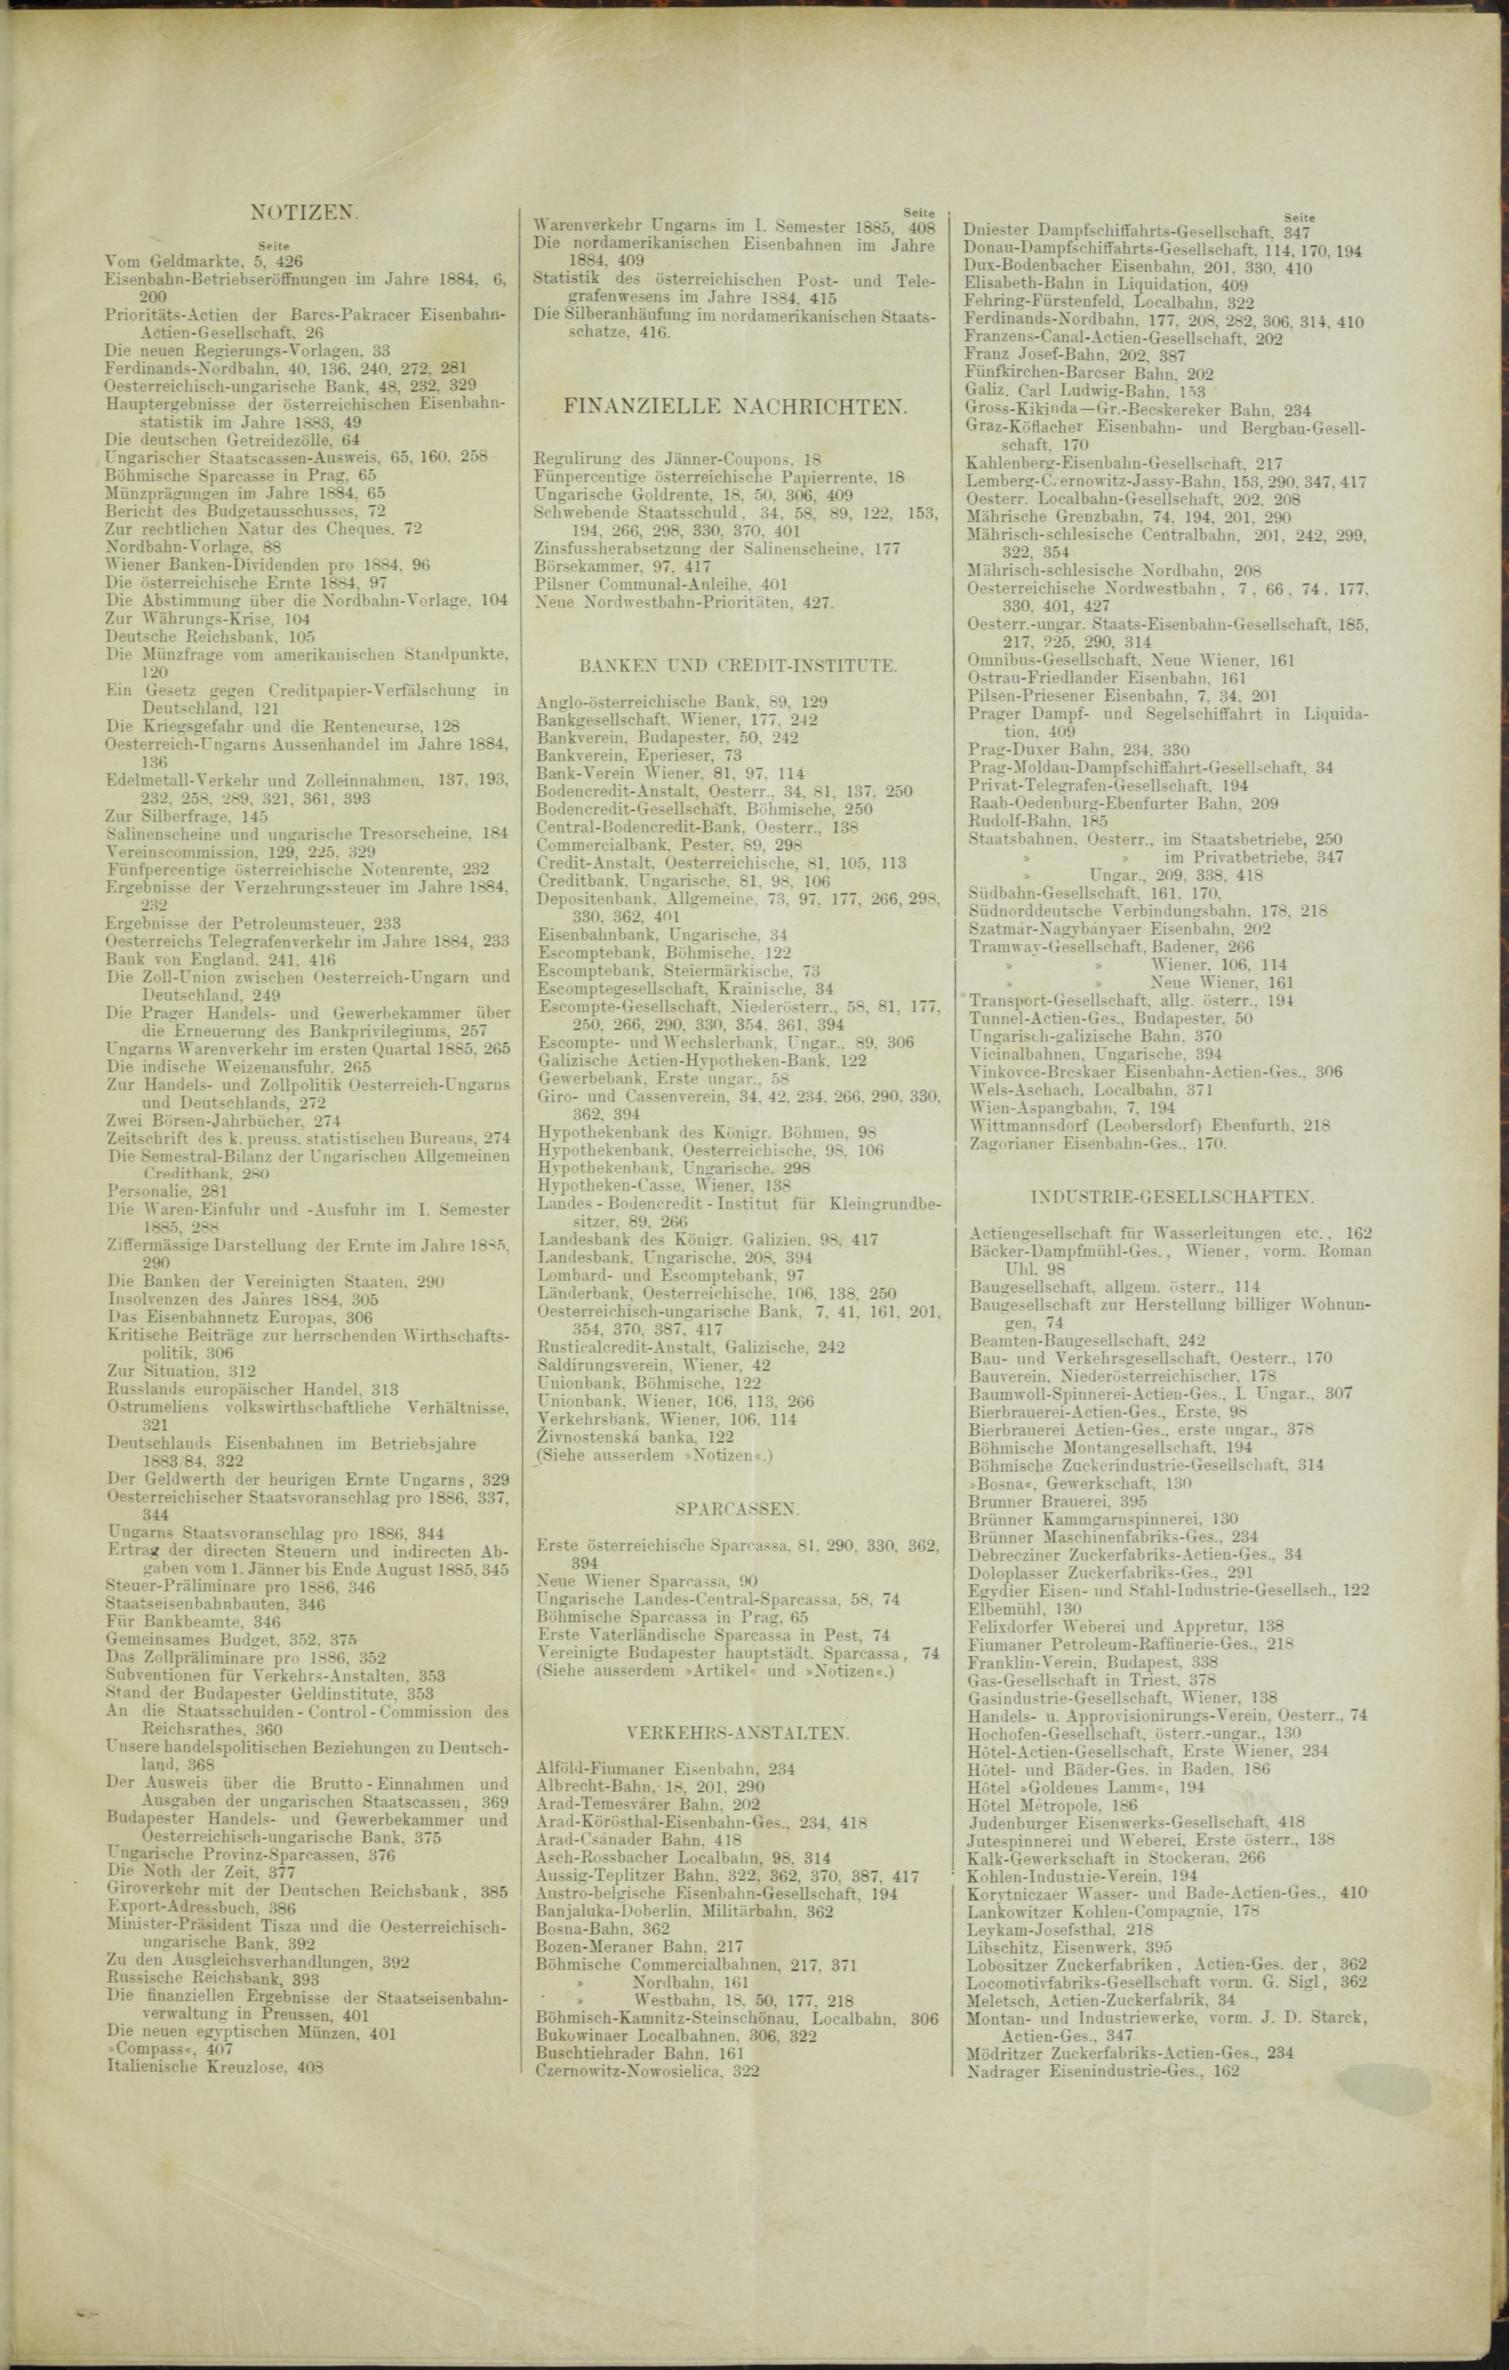 Der Tresor 19.11.1885 - Seite 11